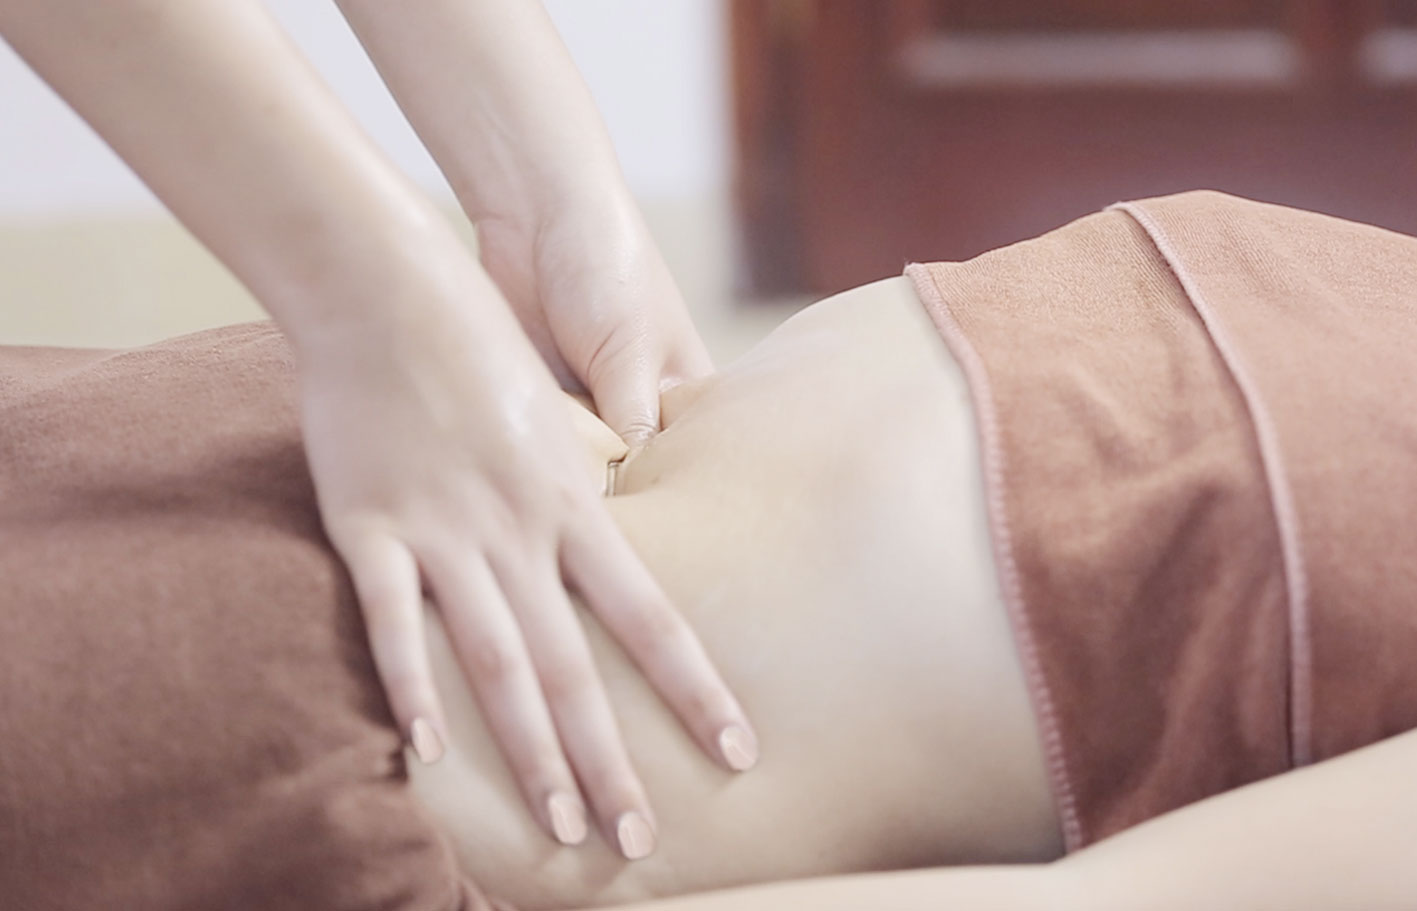 Massage bụng với kem dưỡng giúp giảm mỡ sau sinh